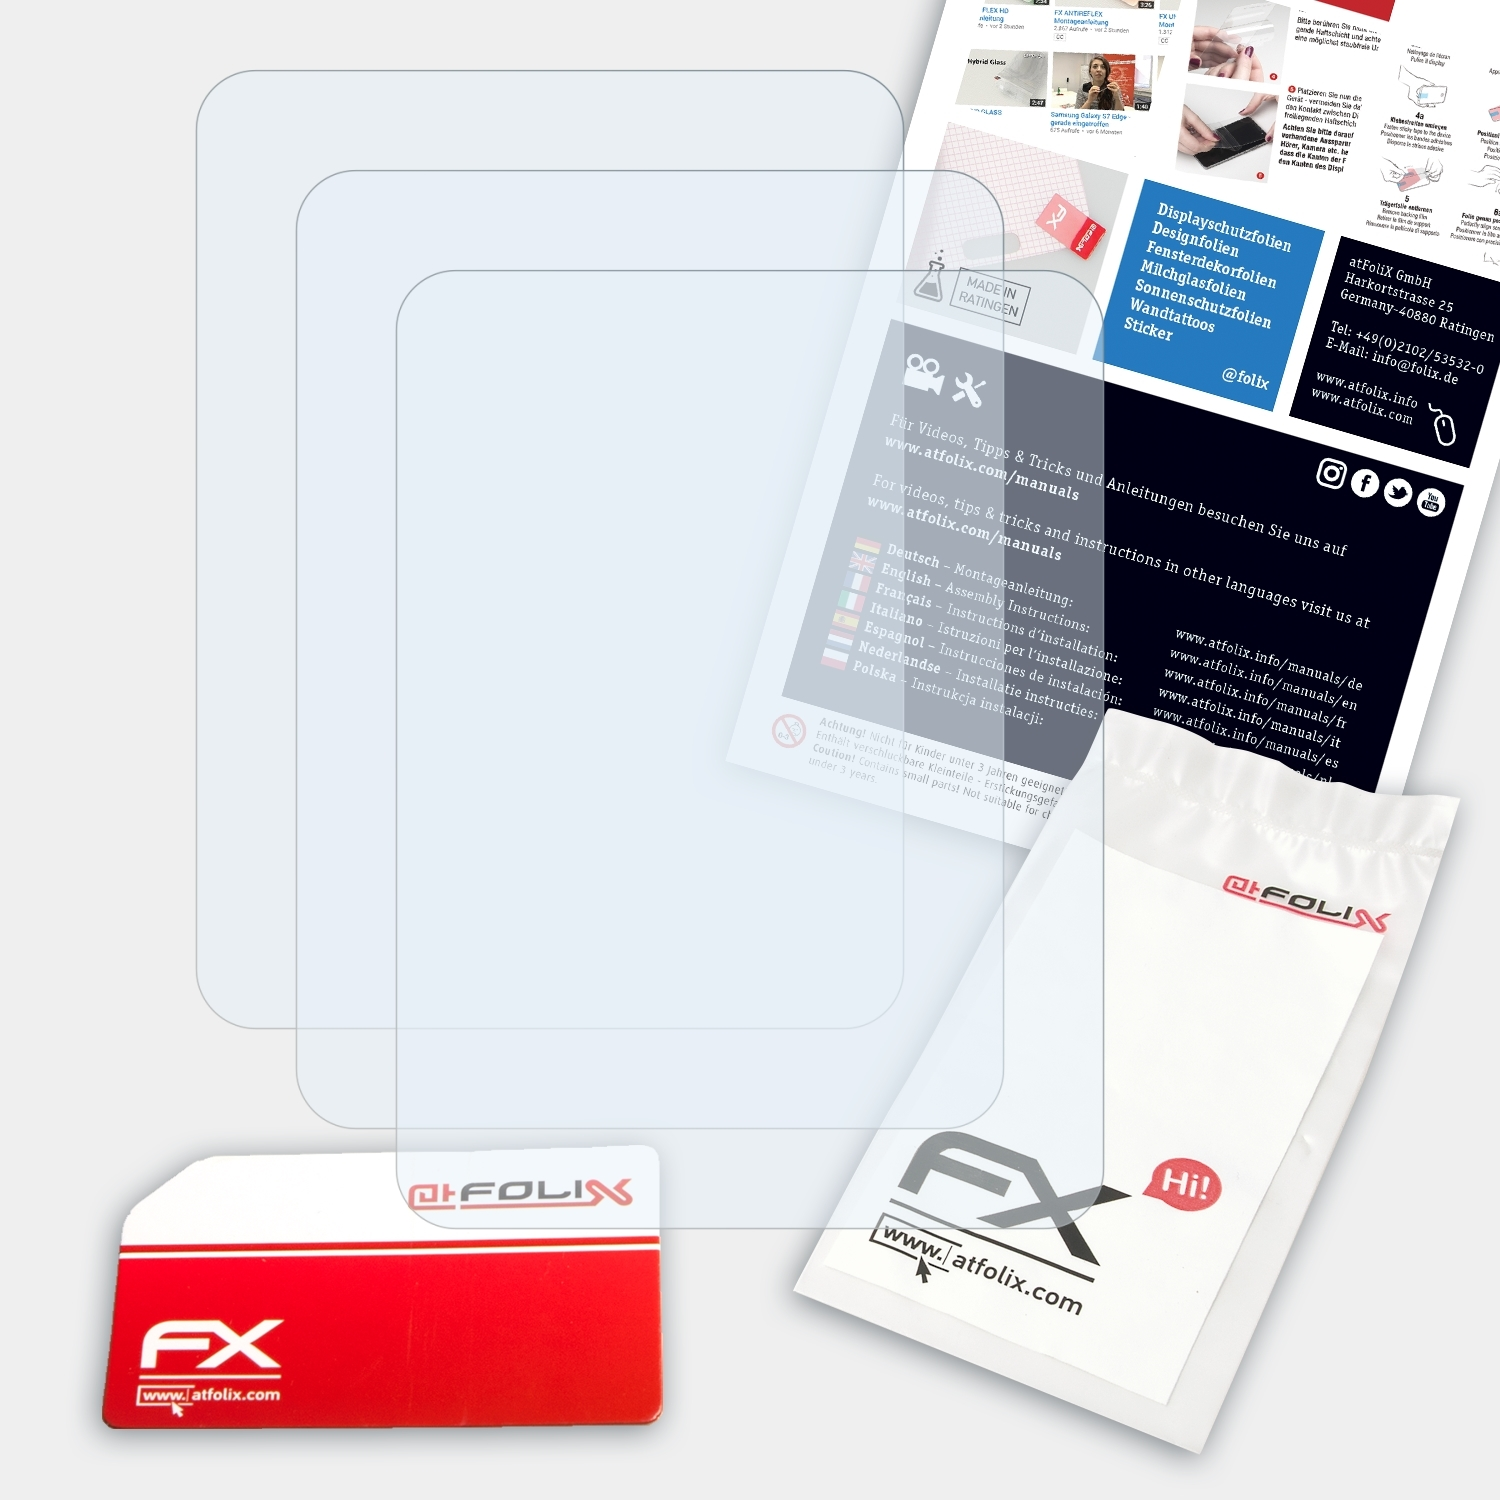 ATFOLIX 3x FX-Clear Sony / Walkman NW-E394) Displayschutz(für NW-E393